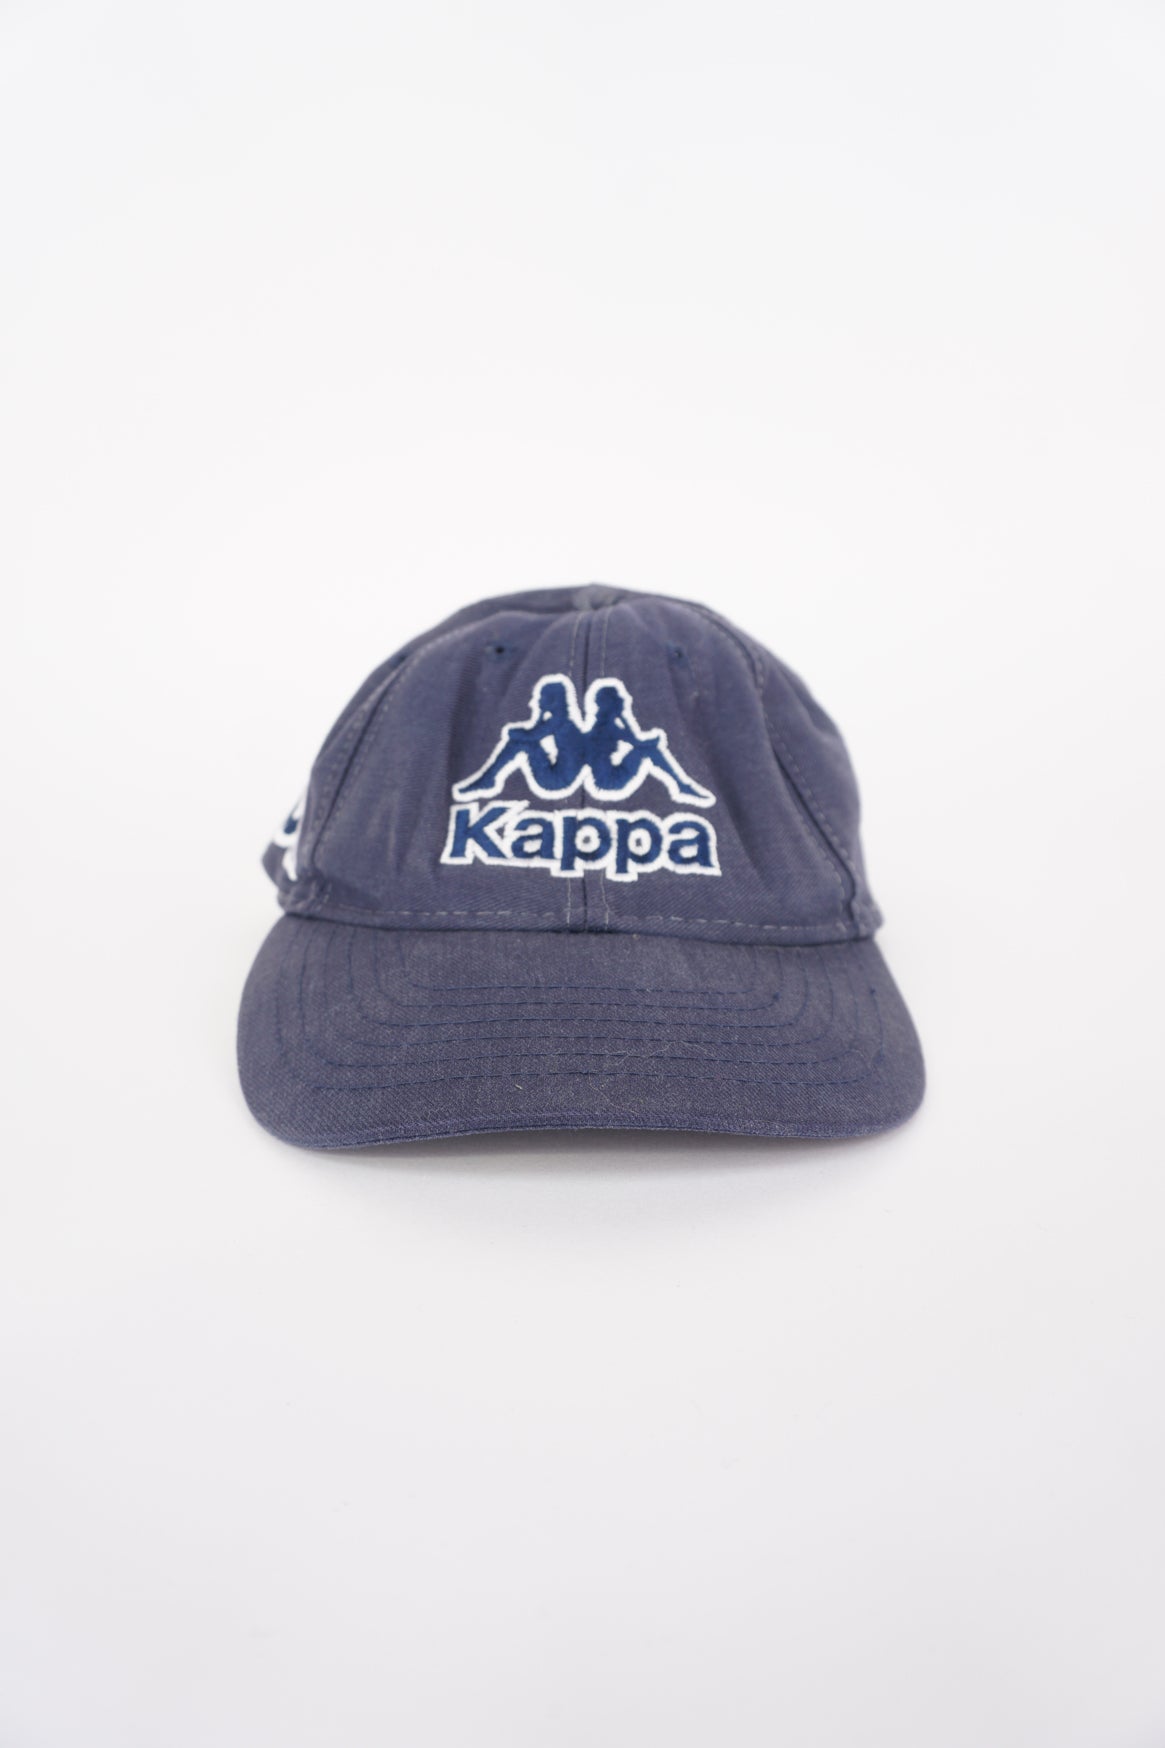 Kappa cap